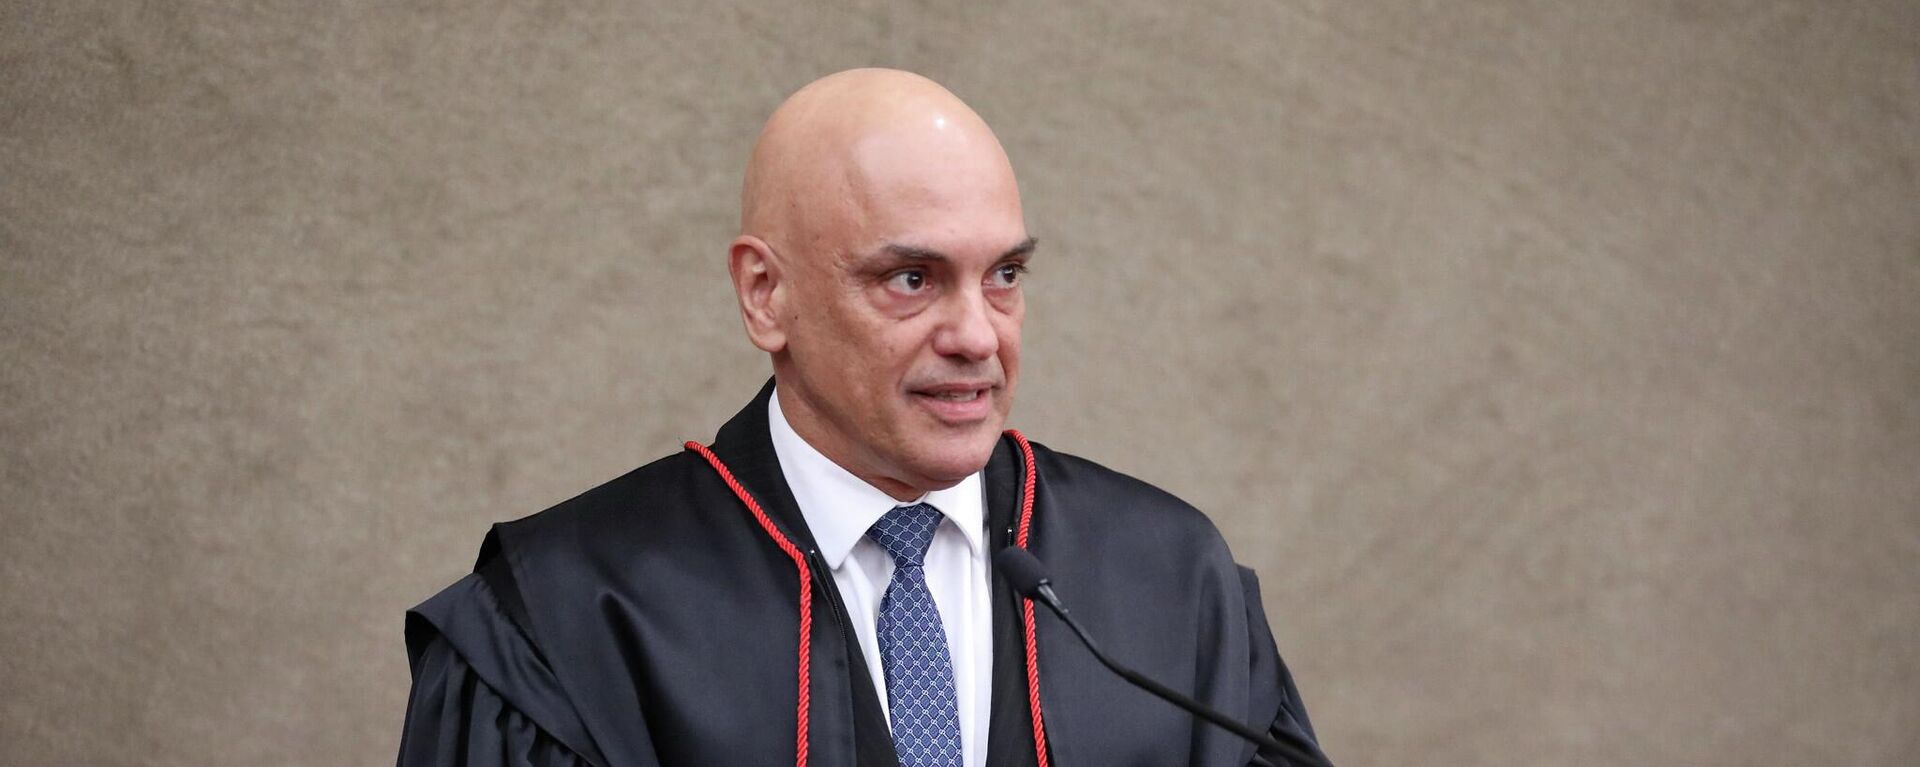 O ministro do Supremo Tribunal Federal (STF) Alexandre de Moraes toma posse como presidente do Tribunal Superior Eleitoral (TSE) - Sputnik Brasil, 1920, 16.08.2022